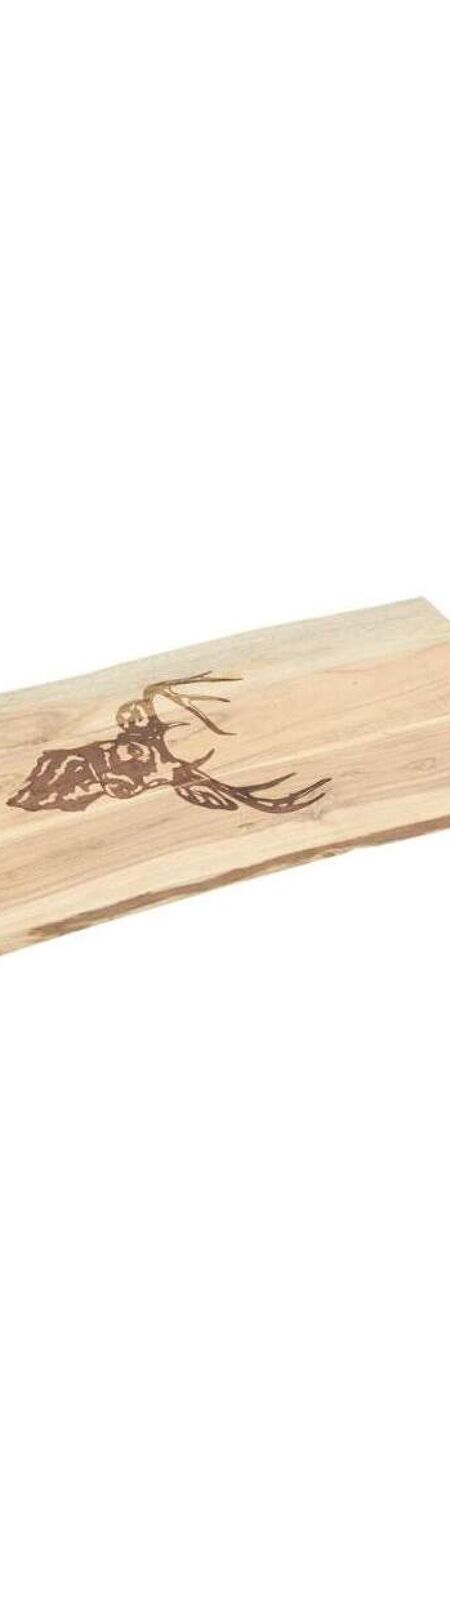 Grande planche à découper en bois d'acacia - Cerf Grand modèle